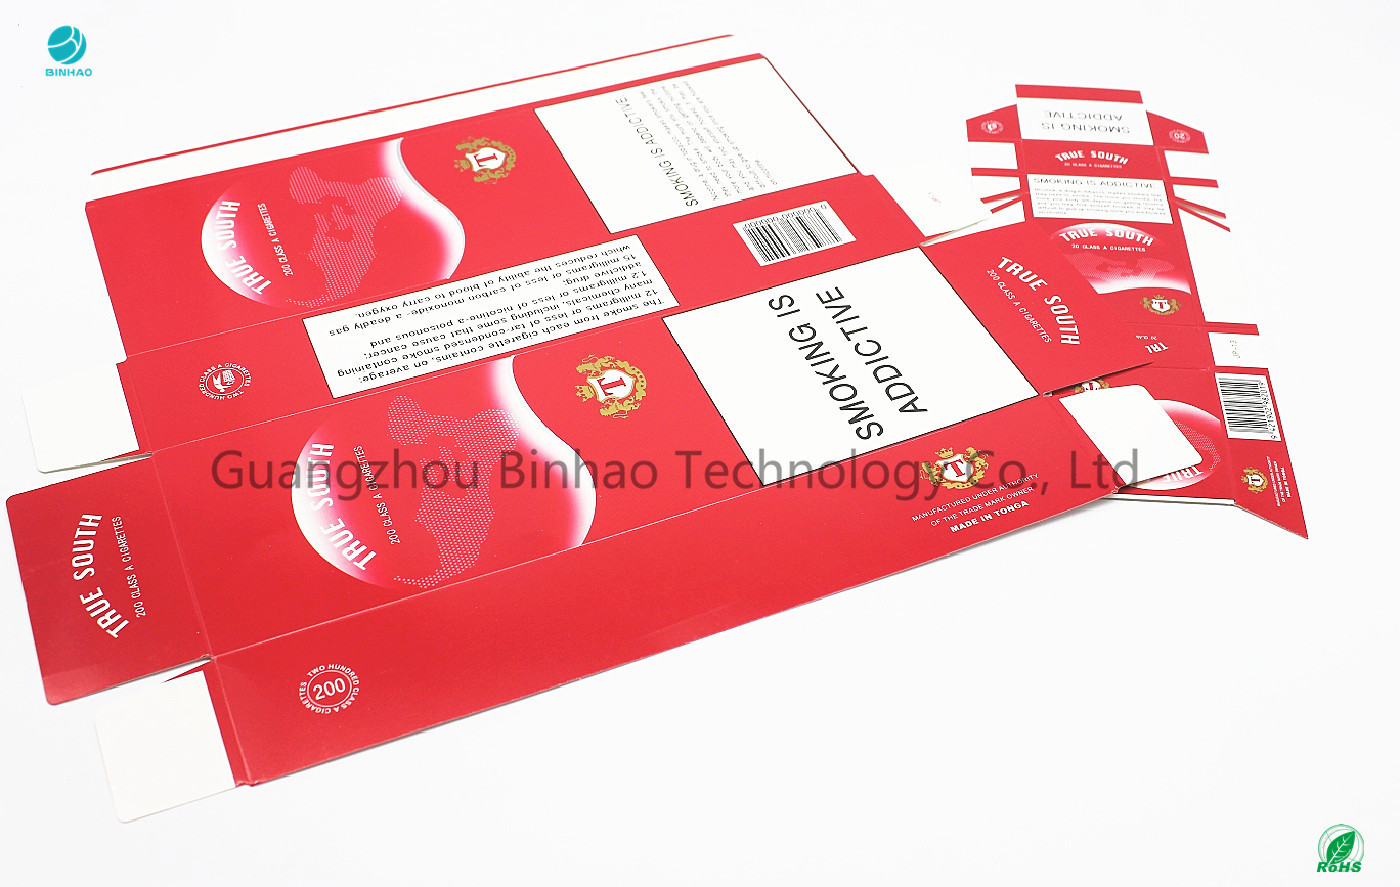 Emballage populaire rouge chinois du Roi Size Cigarette Box de 7.8mm dans la machine de GD